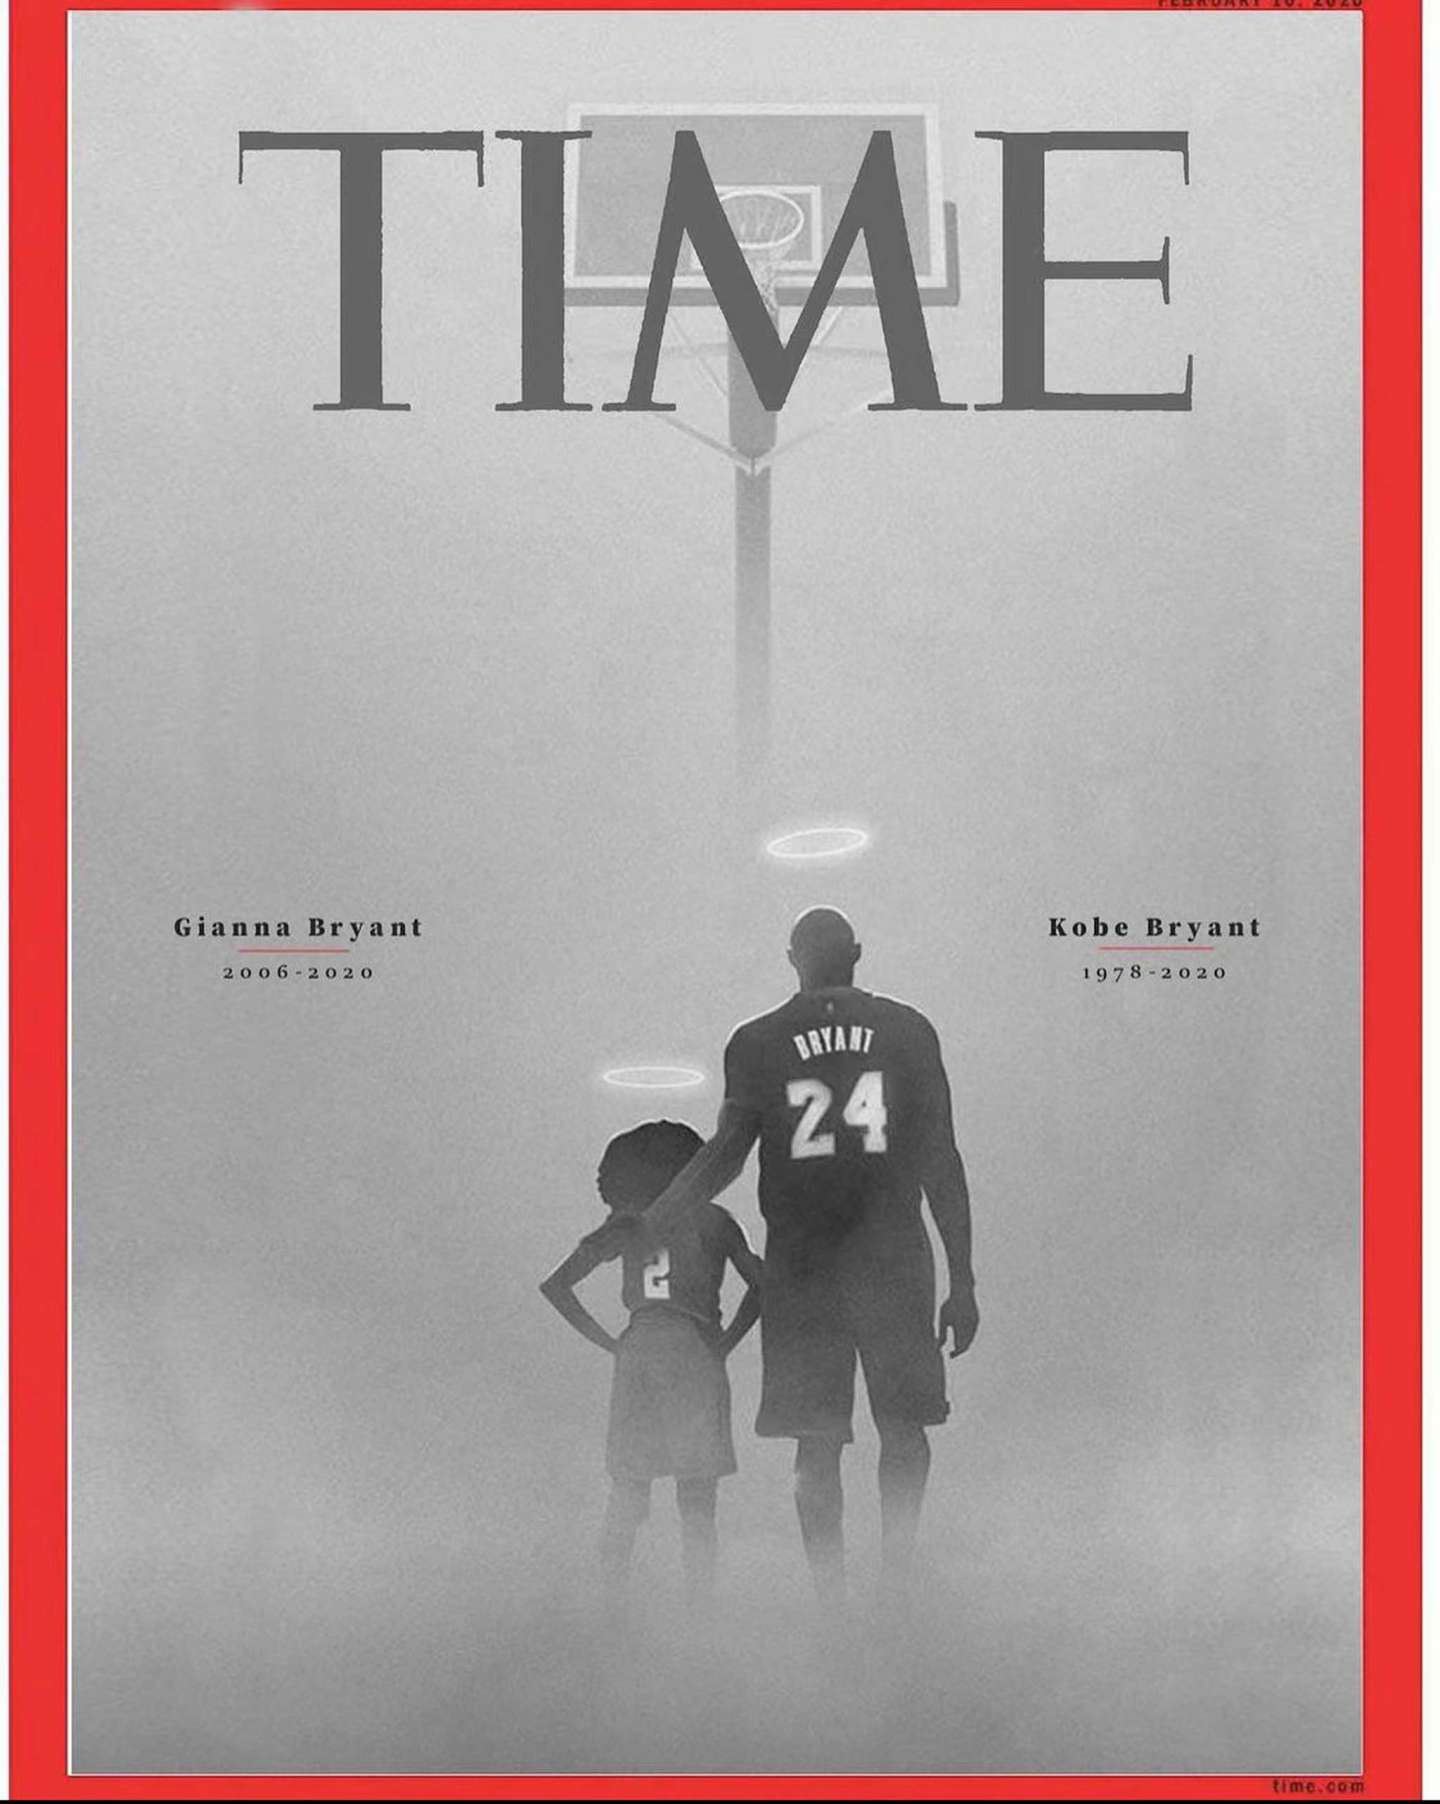 Magazine Cover Honoring Kobe Bryant